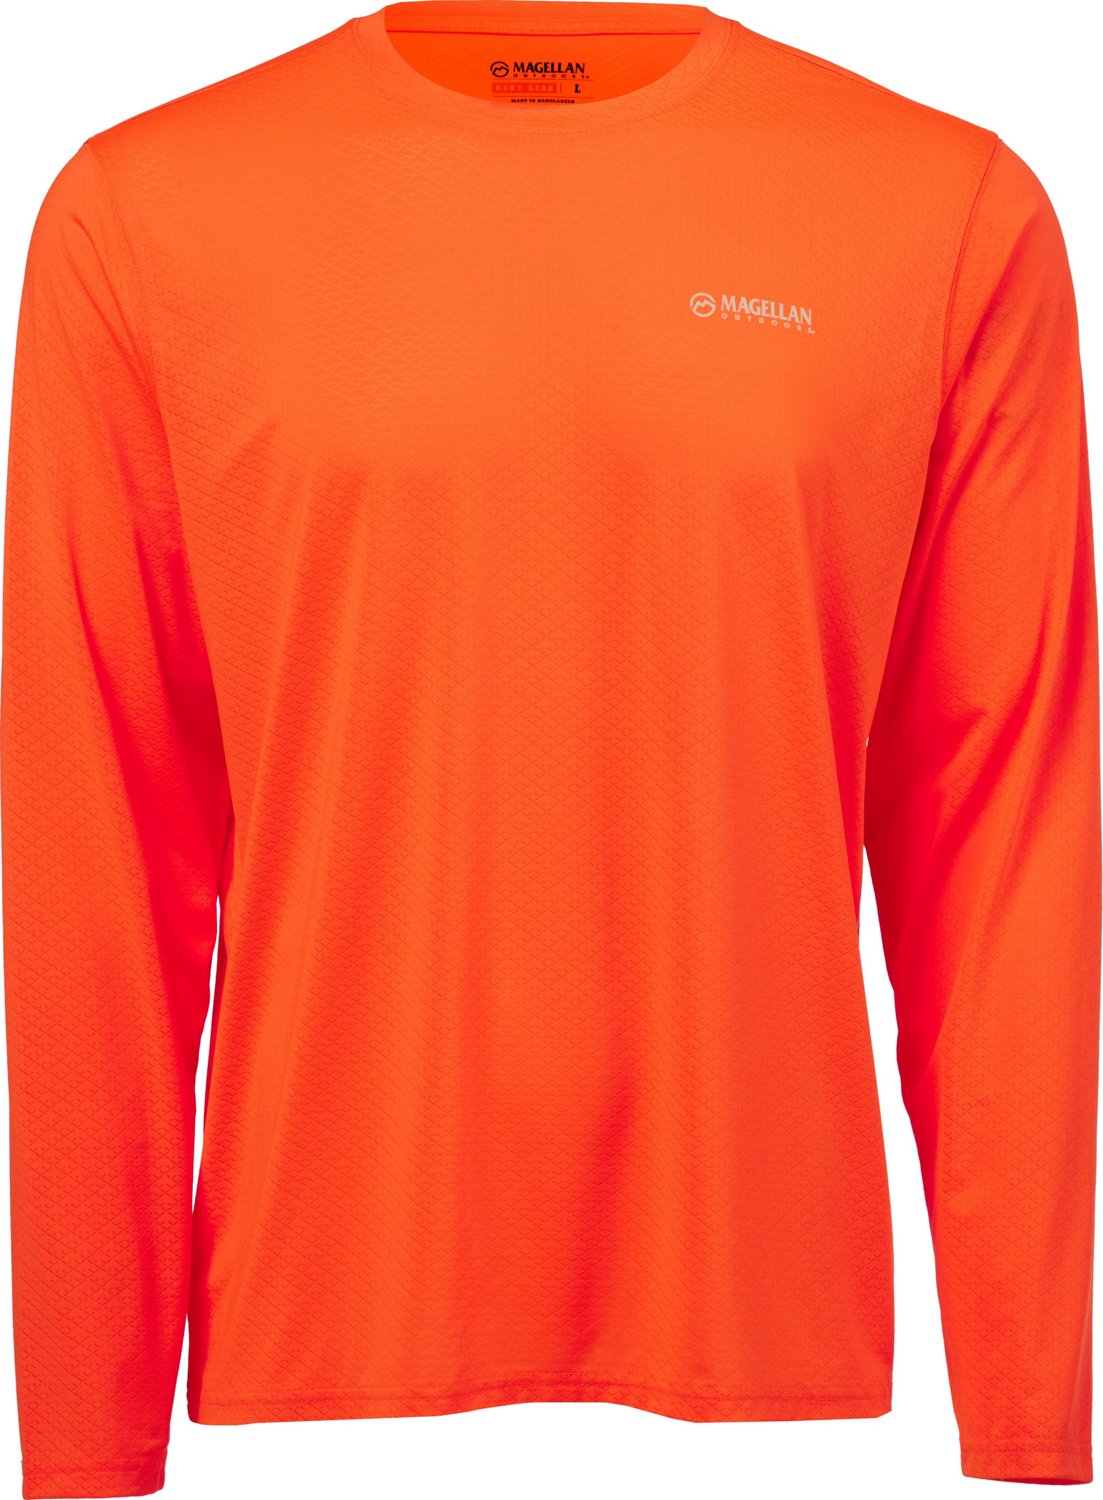 Magellan mens shirt orange - Gem